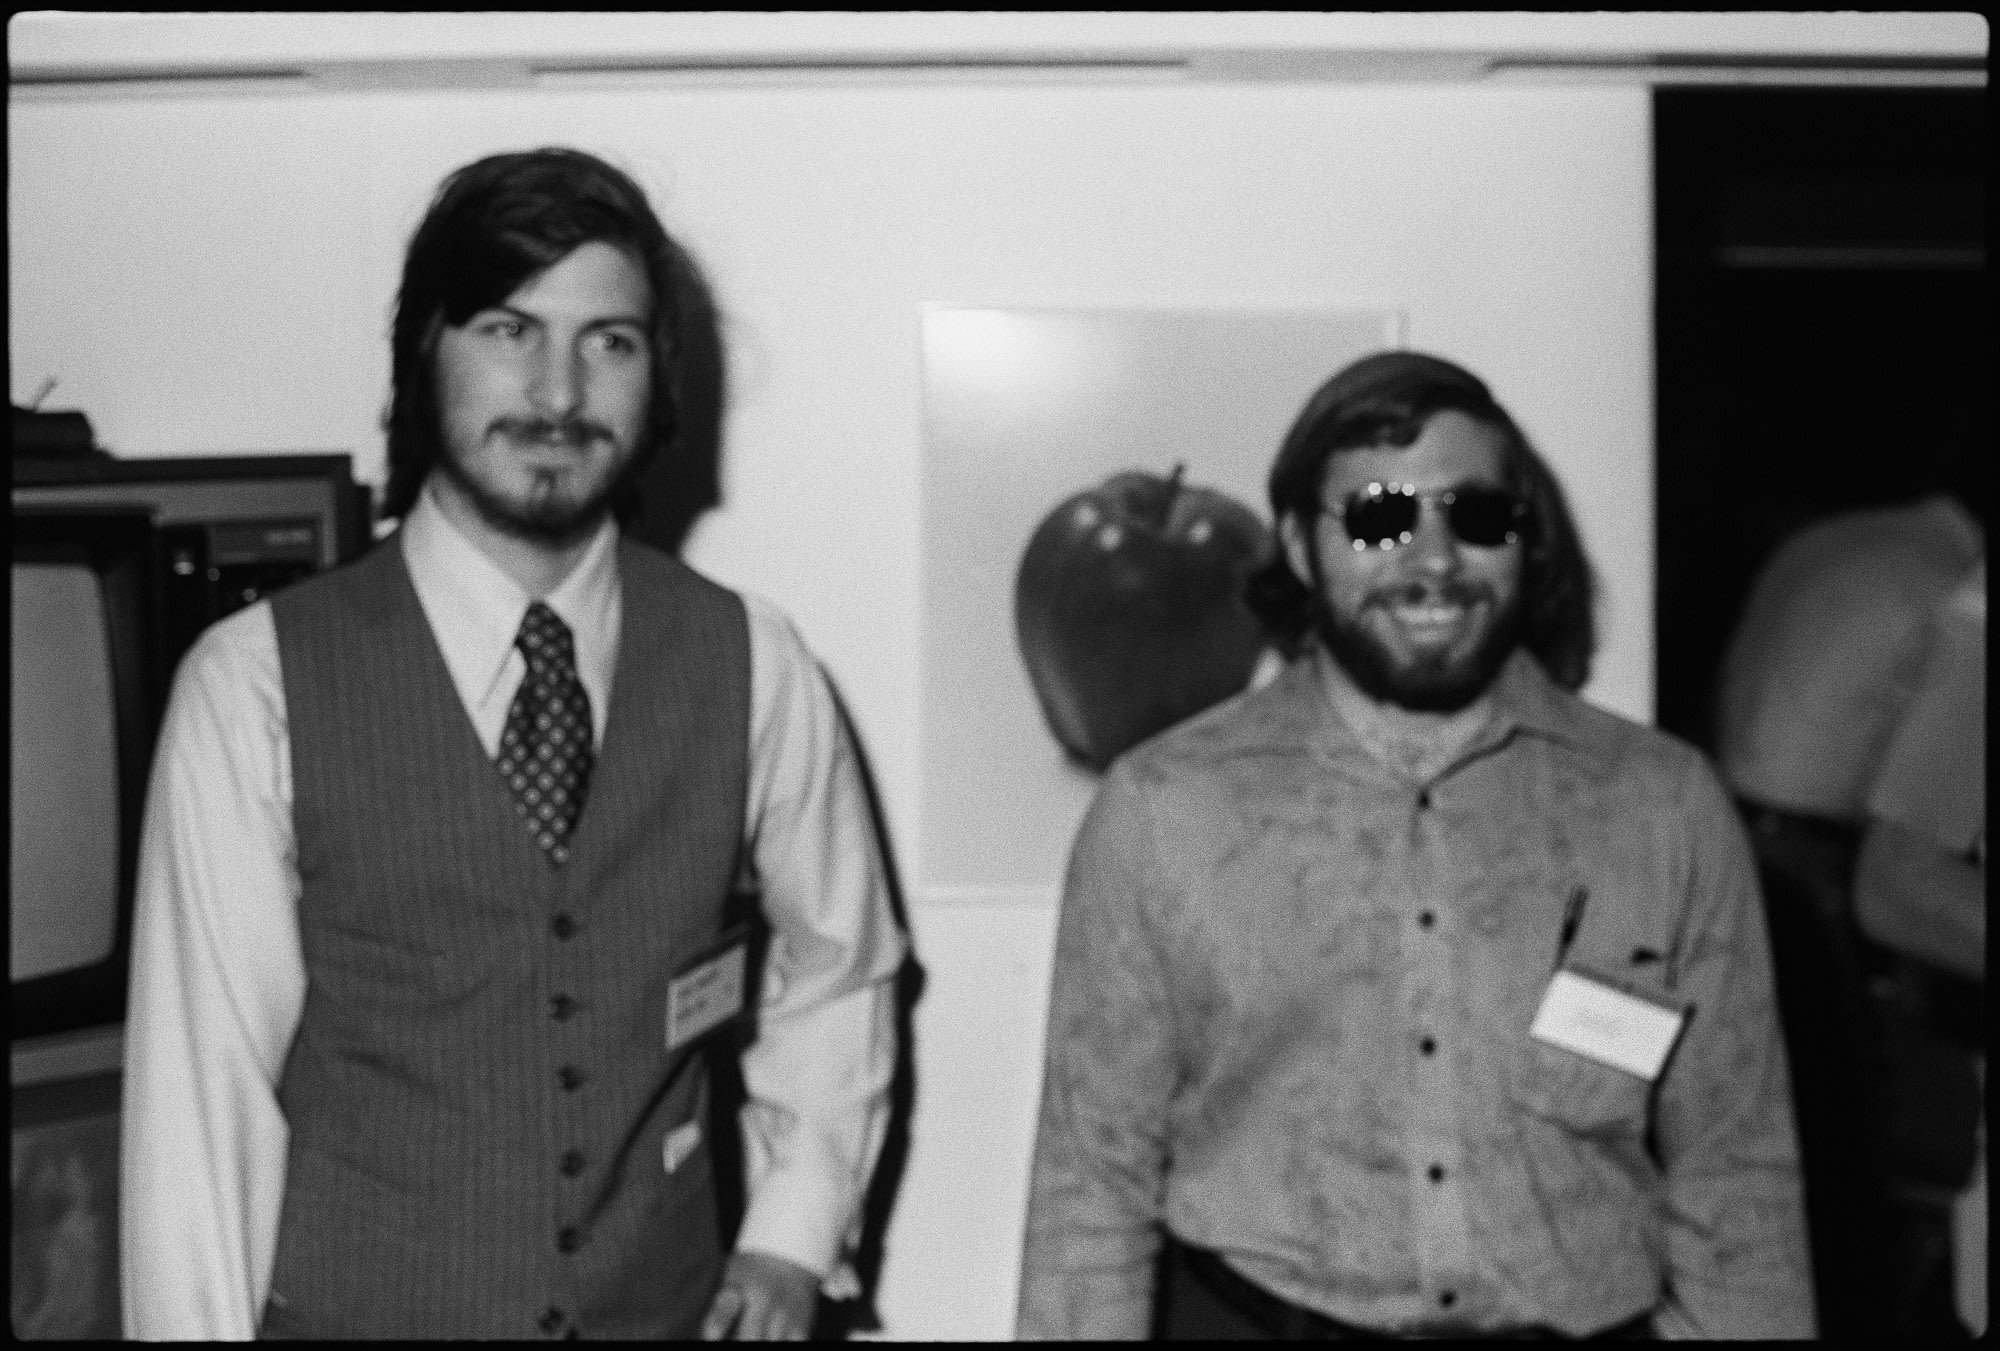 Steve Jobs Wallpaper , HD Wallpaper & Backgrounds